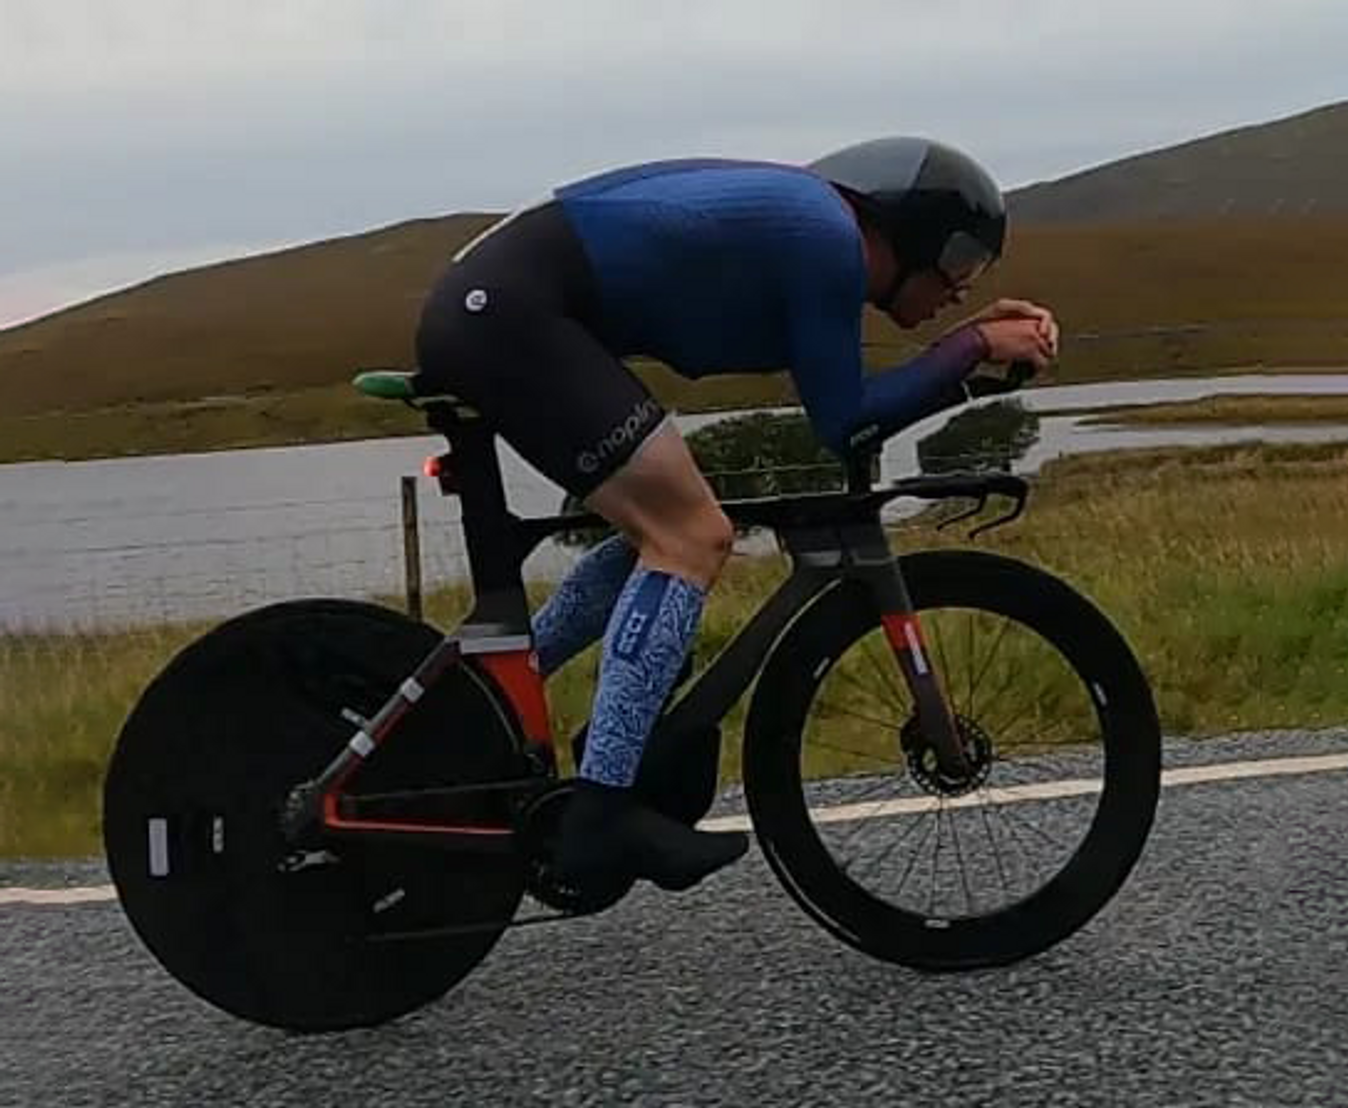 Matt Downie used an aero chest fairing on his TT bike